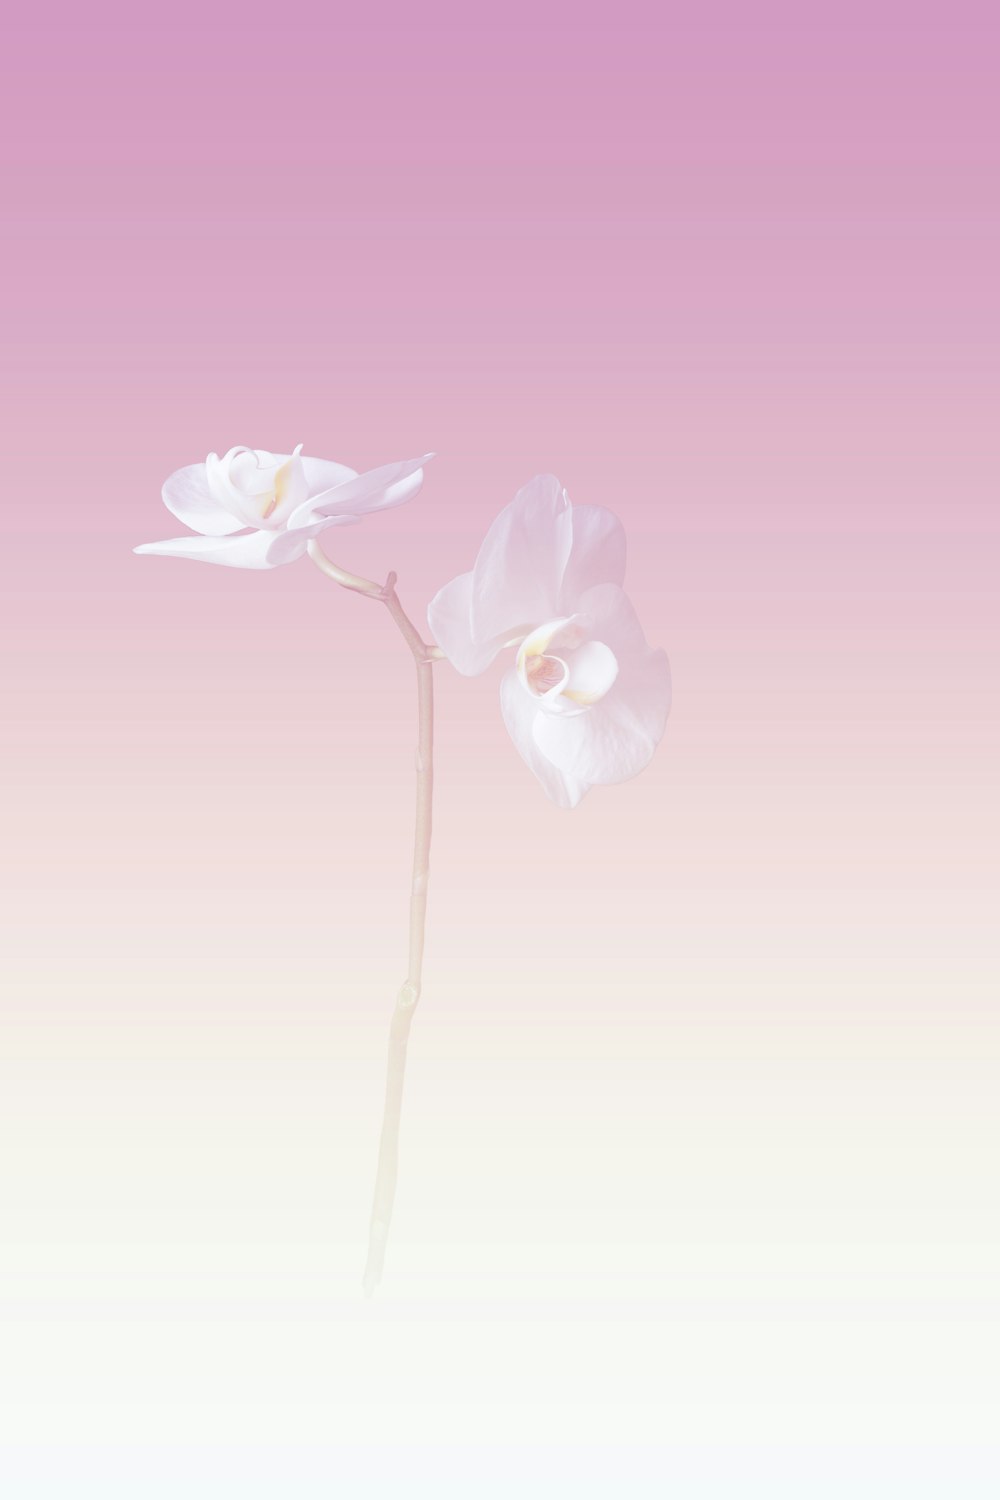 deux fleurs blanches sur fond rose et blanc